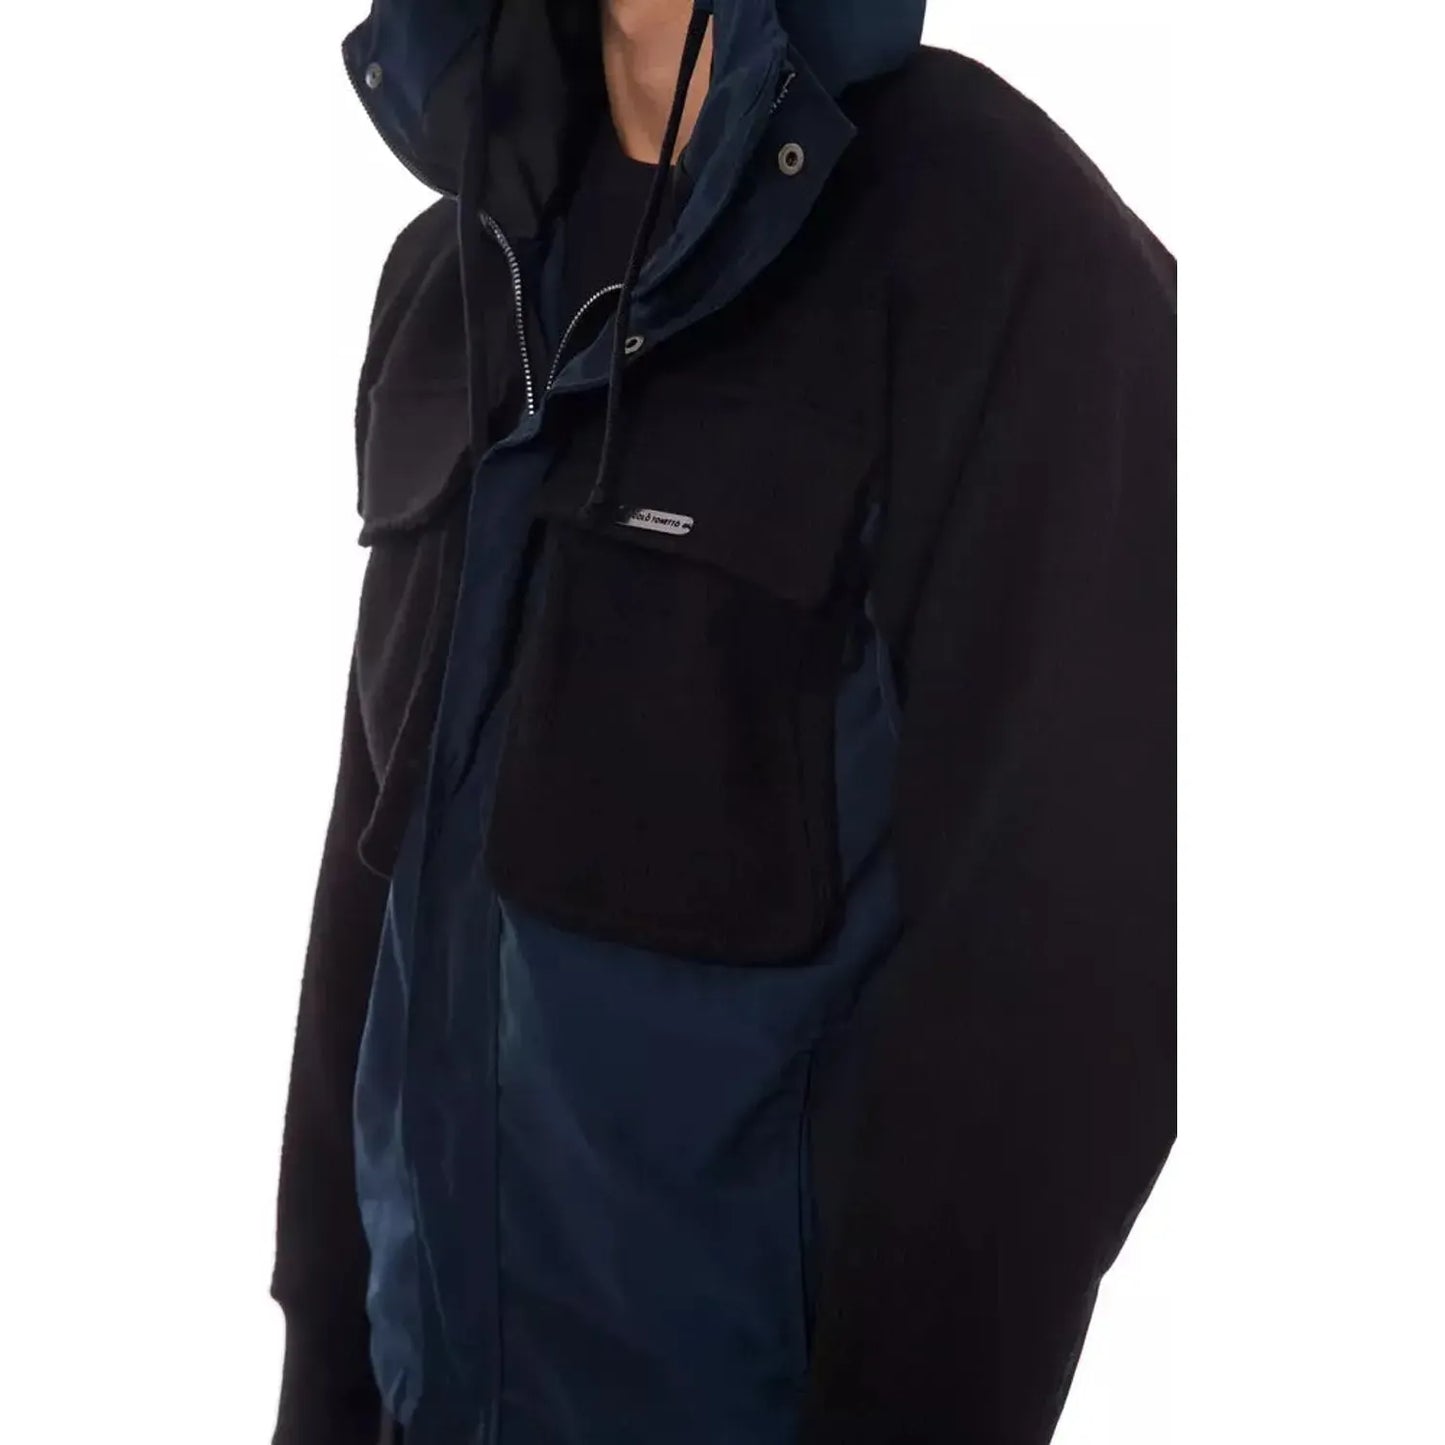 Nicolo Tonetto Elegant Wool Blend Hooded Jacket Coats & Jackets black-blue-jacket